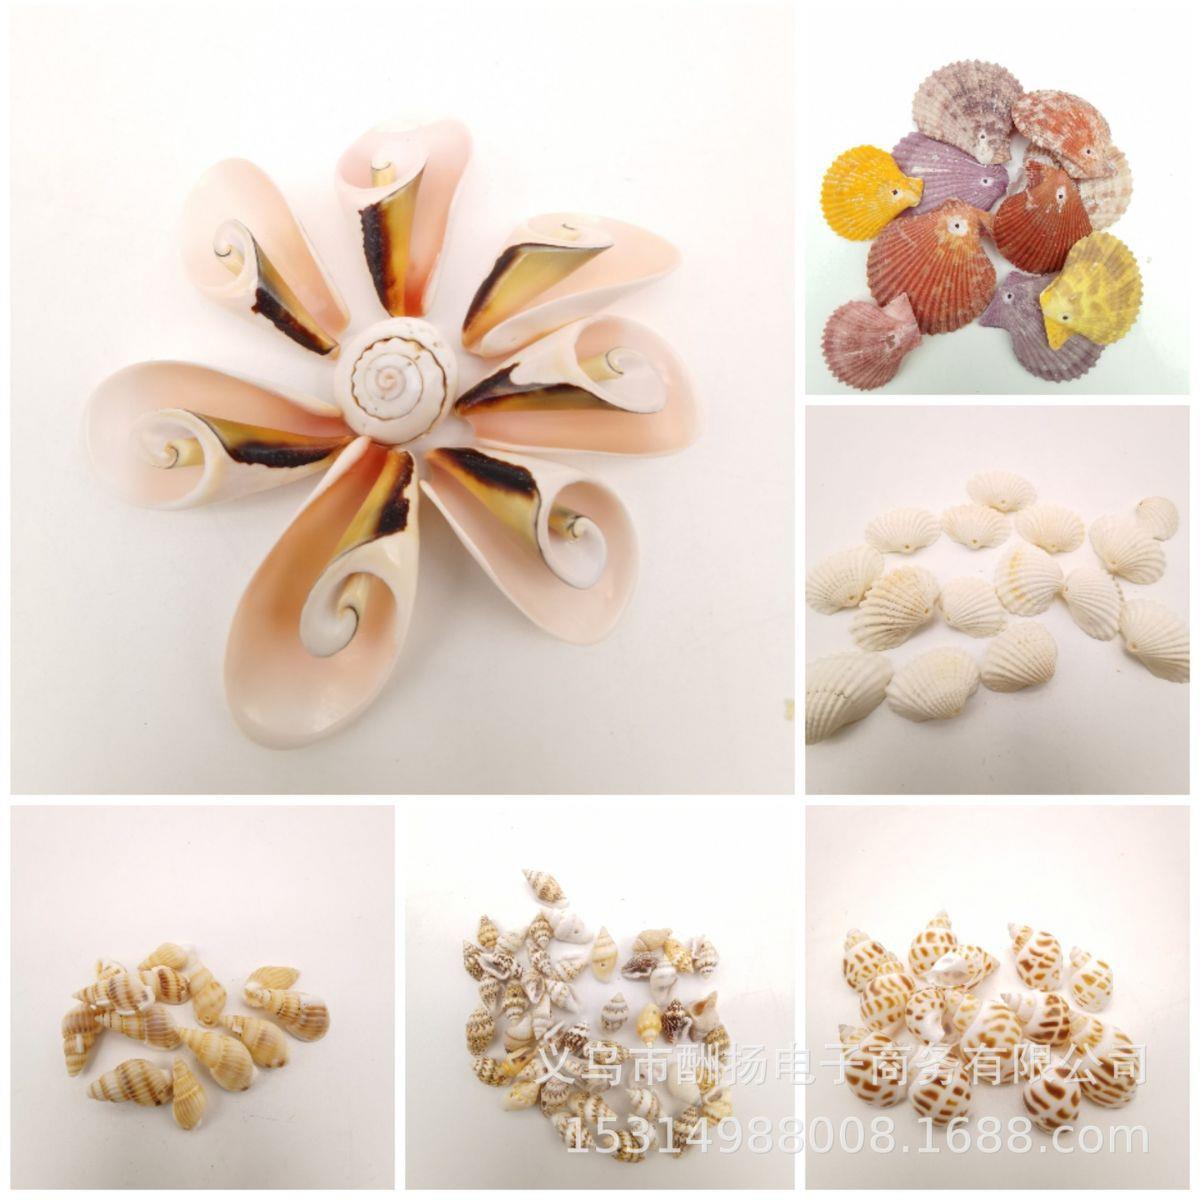 40个种类打孔天然贝壳海螺海星厂家 幼儿园手工diy挂饰品配件定制